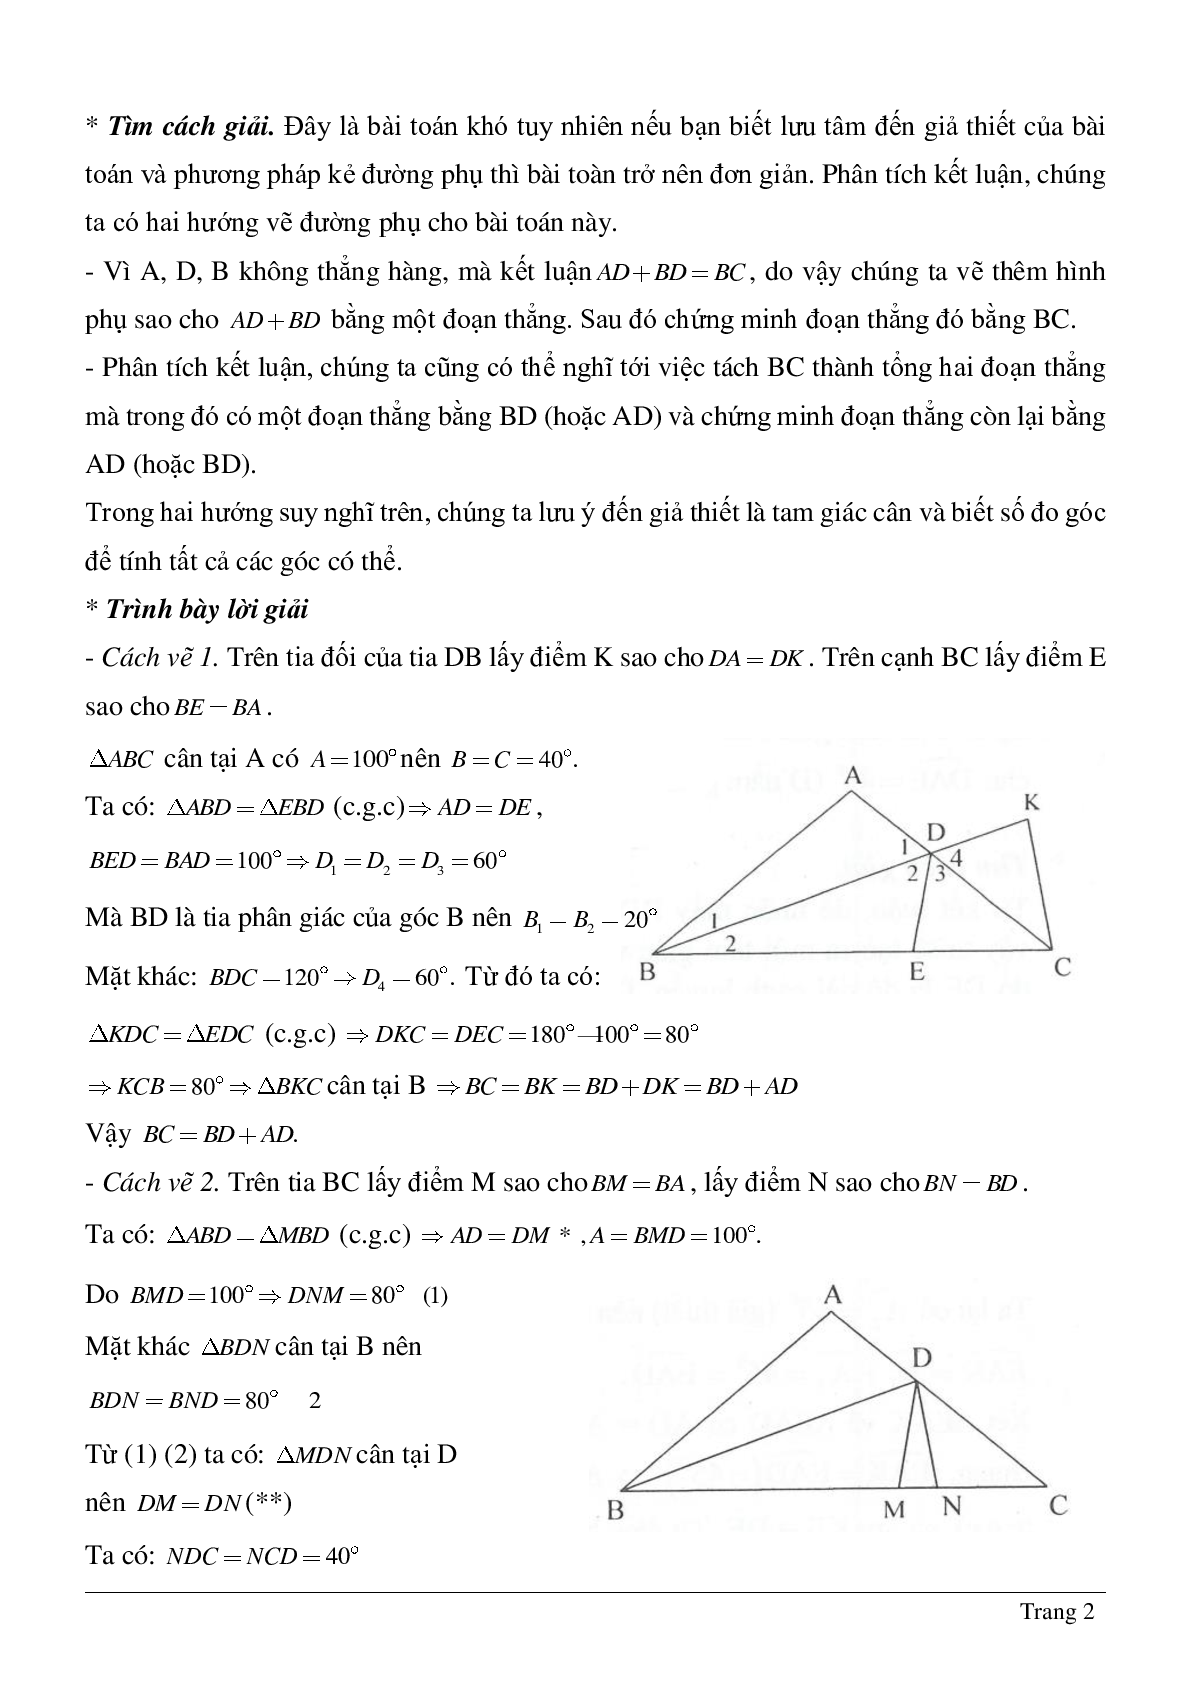 Phương pháp giải về Vẽ hình phụ để giải các bài toán hình học có lời giải (trang 2)